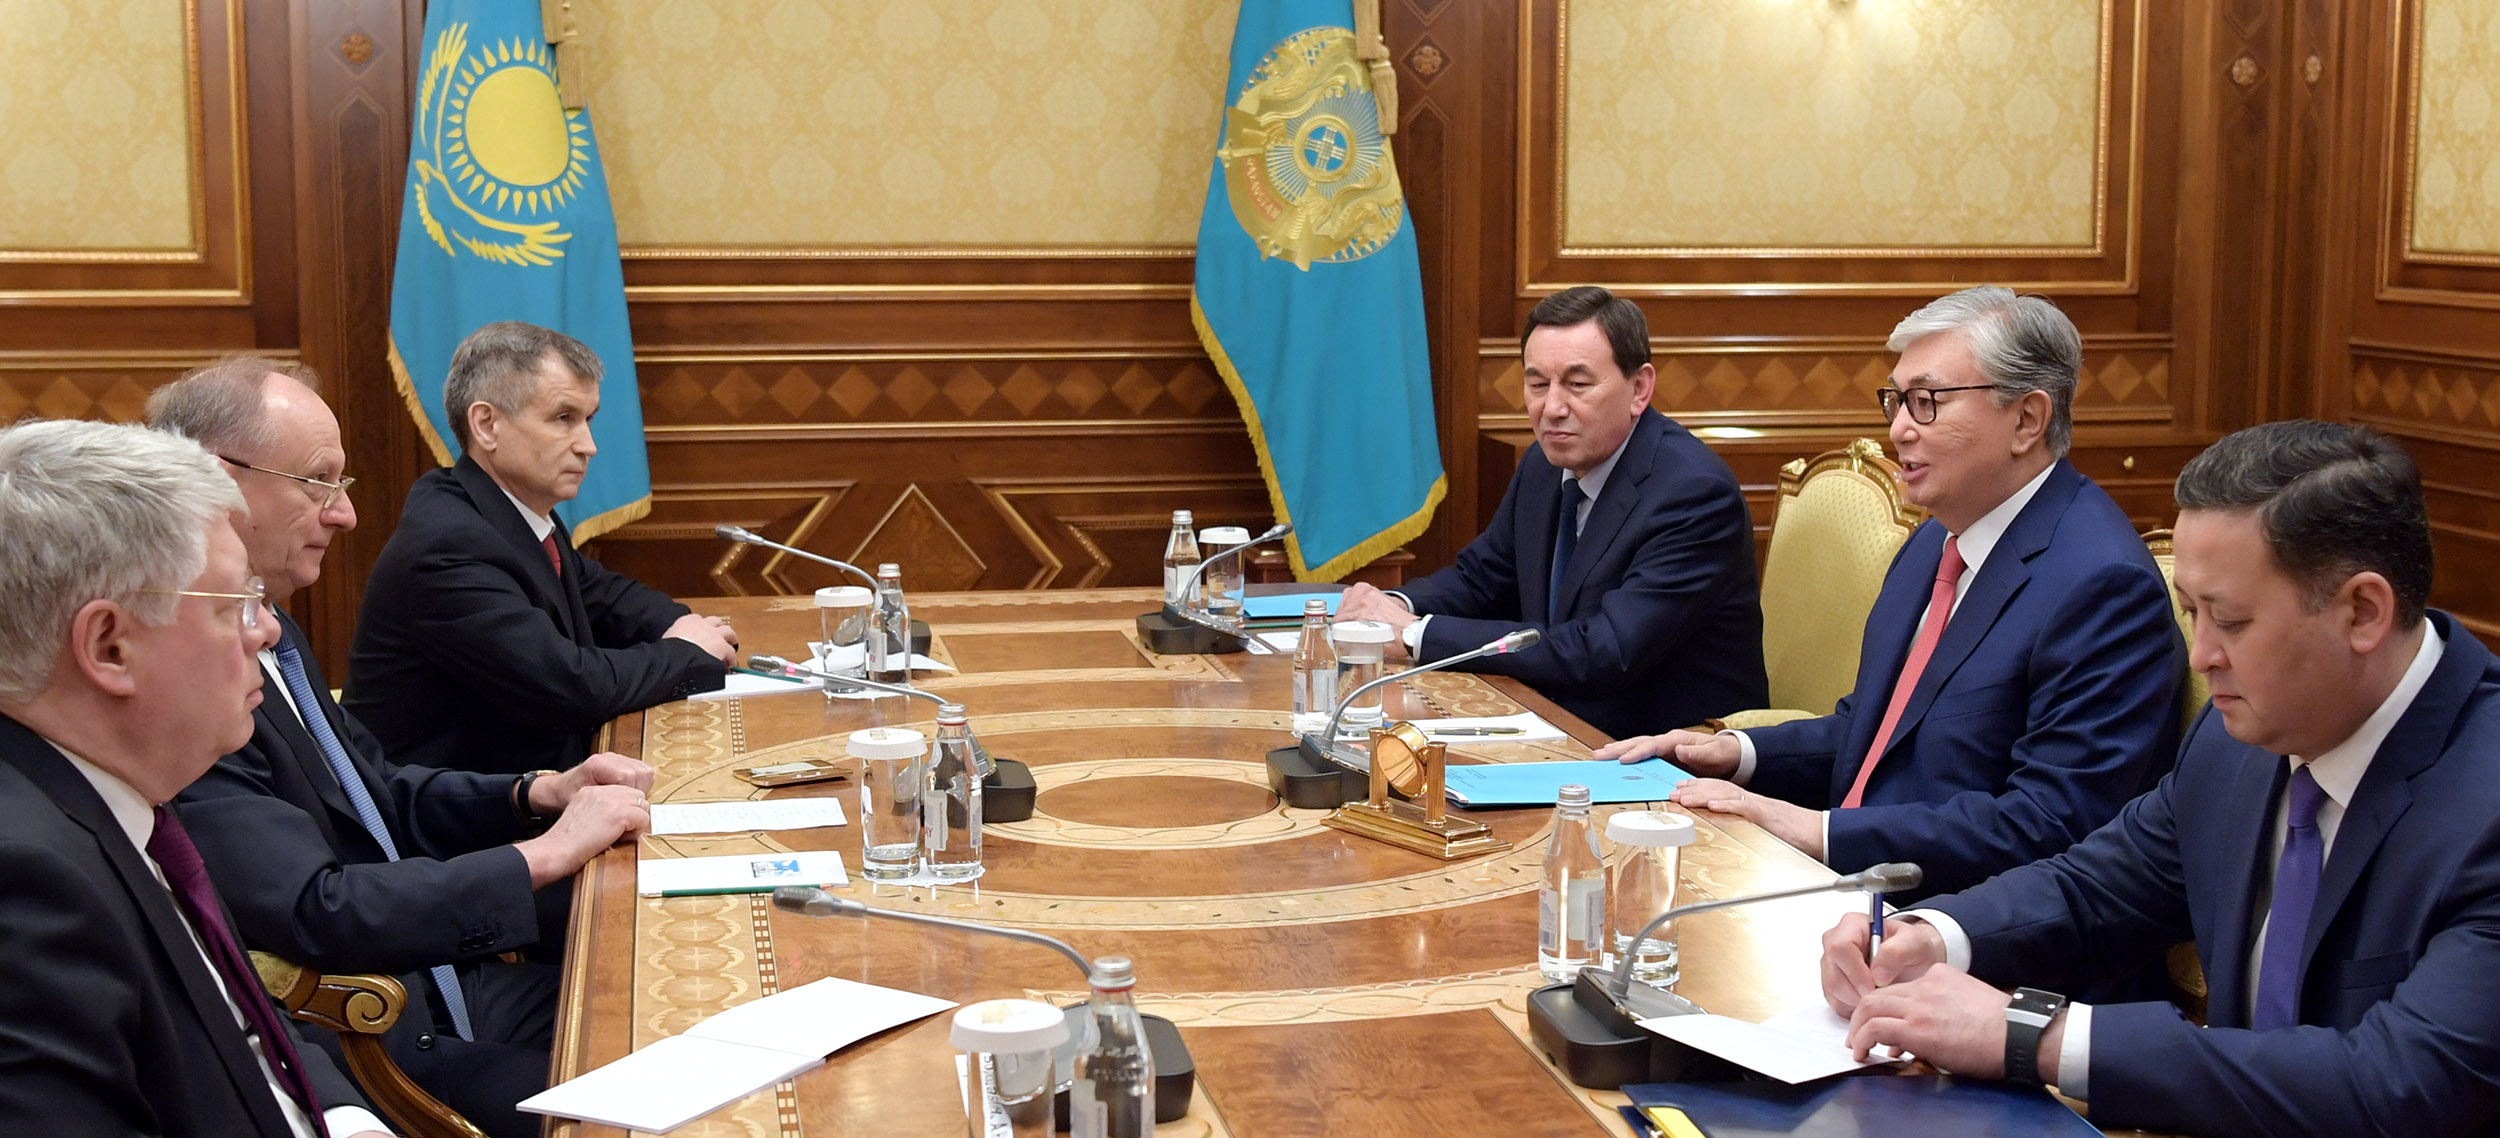 Касым-Жомарт Токаев встретился с секретарем Совета безопасности РФ Николаем Патрушевым